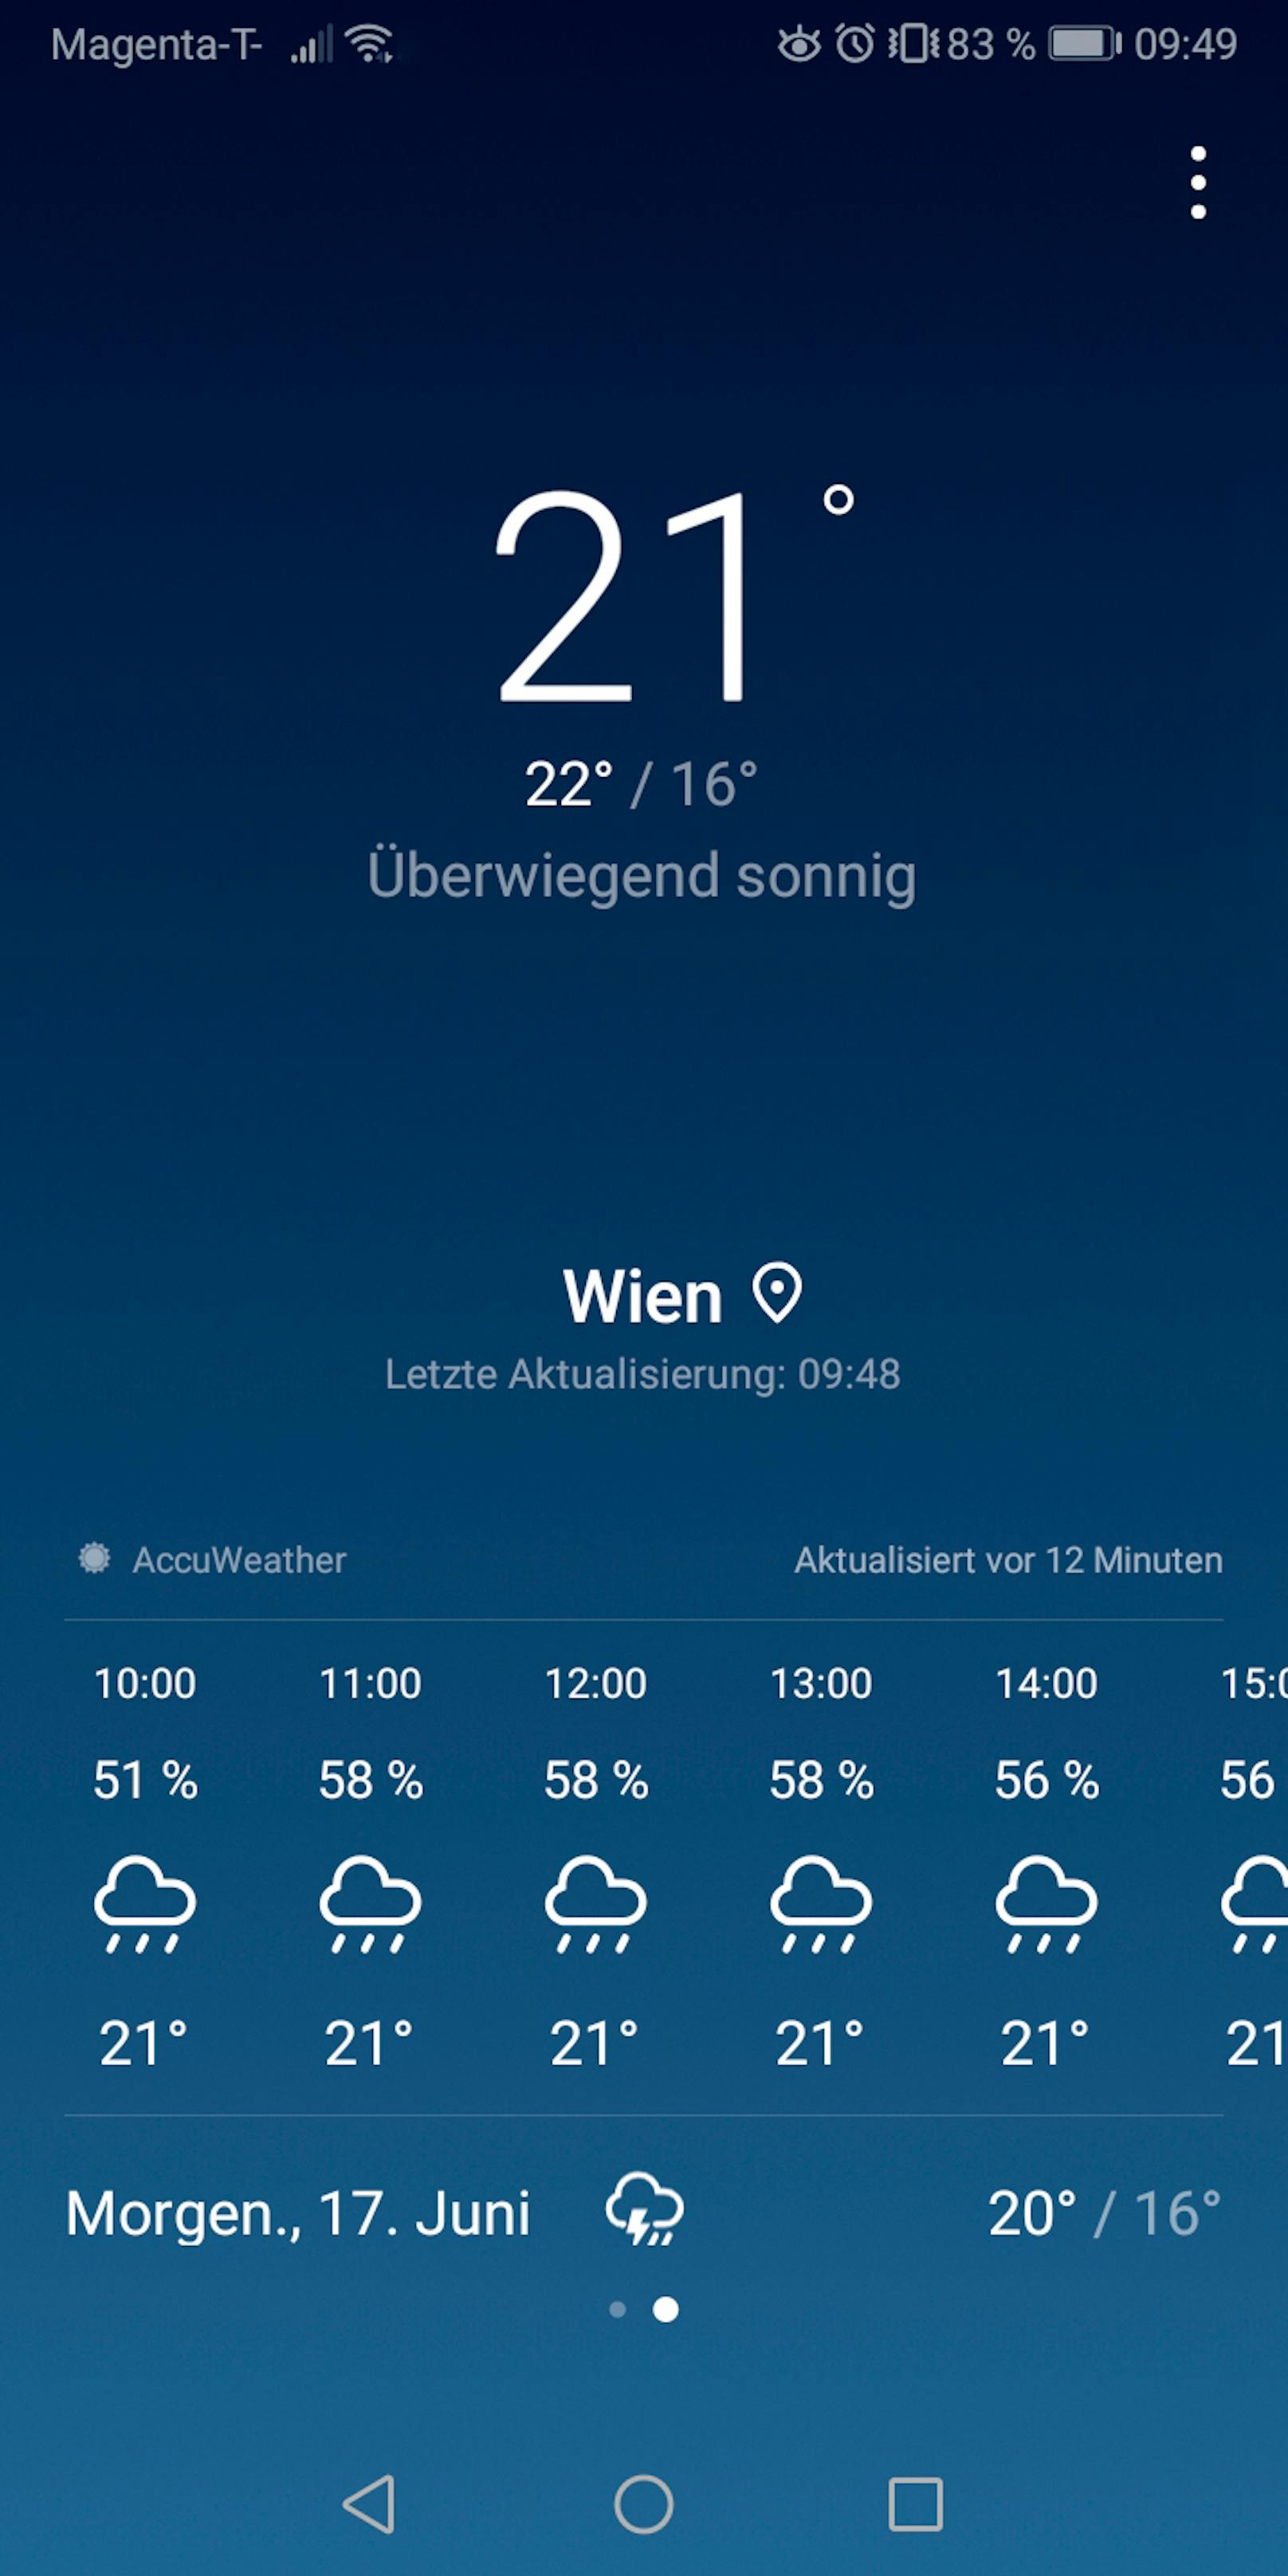 Wetter-Apps zeigen unterschiedliche Prognosen